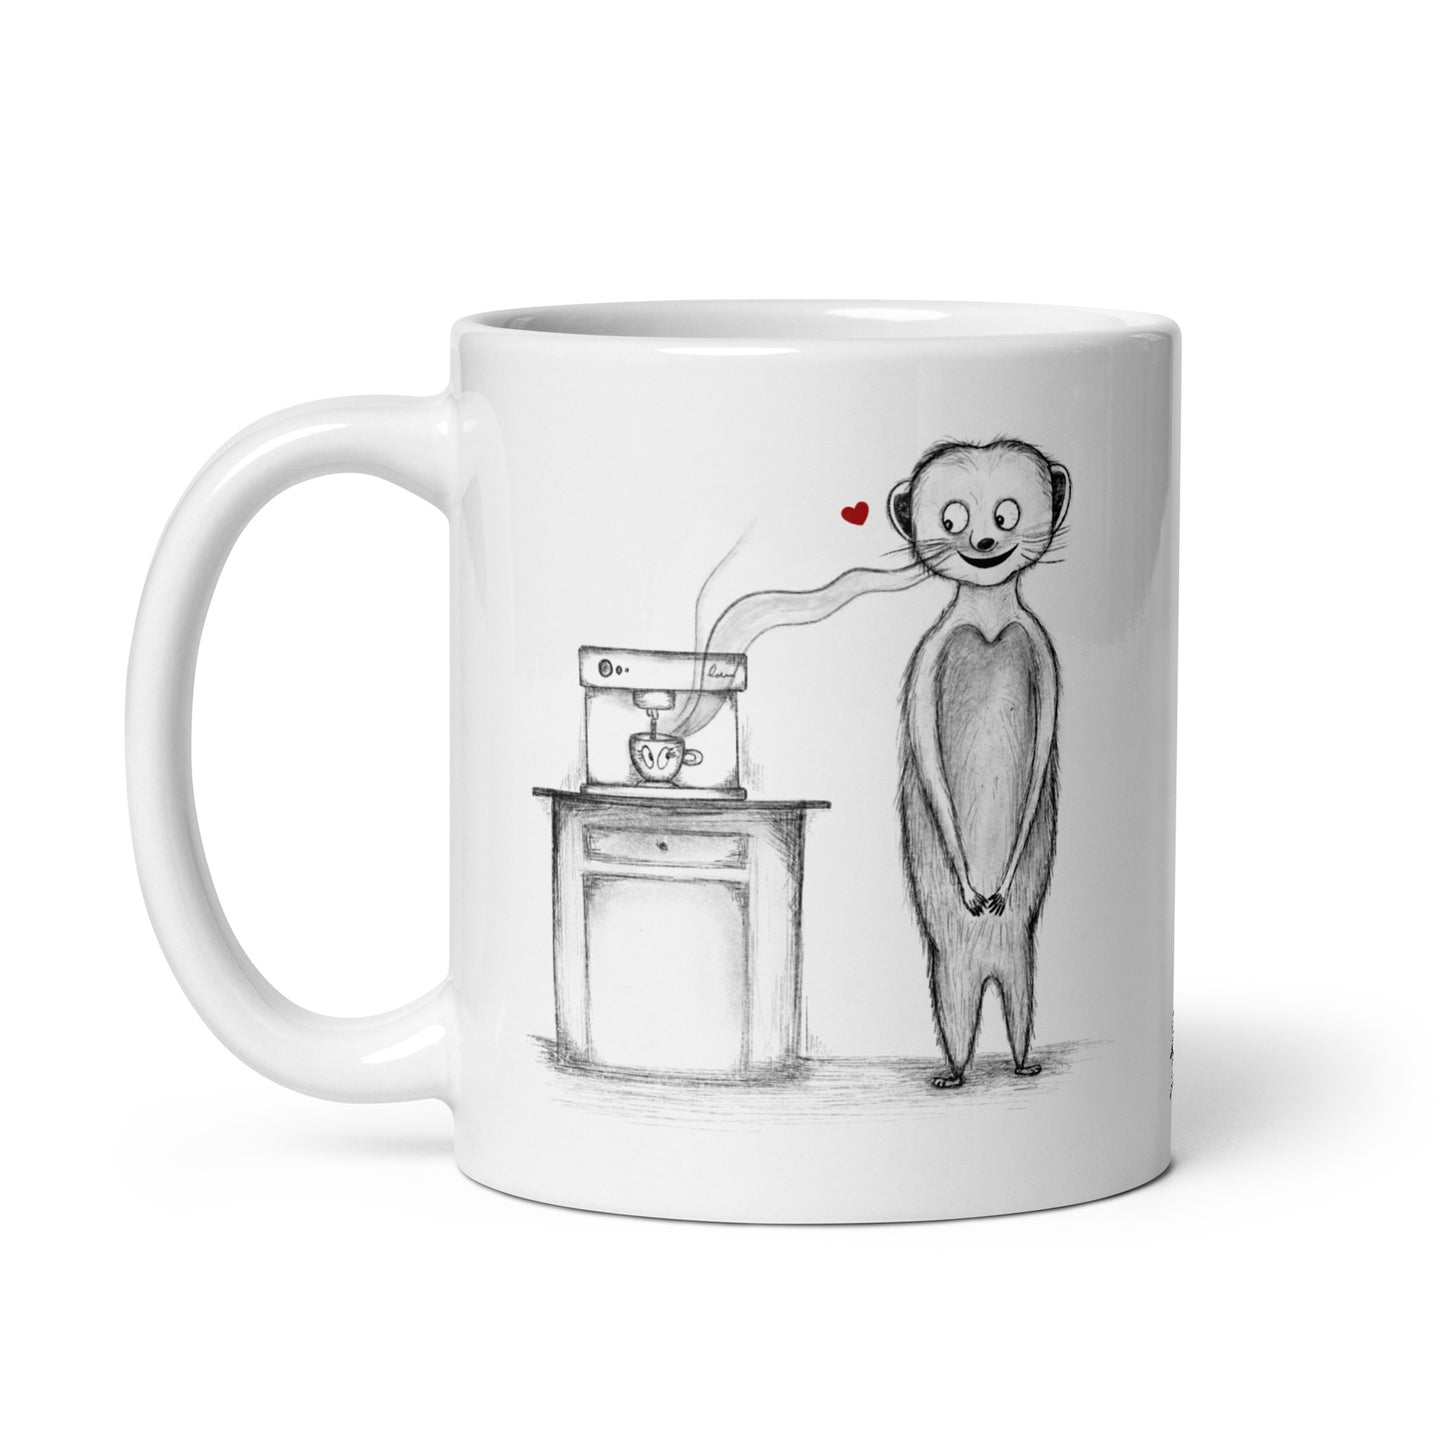 Meerkat in Love Ceramic Mug